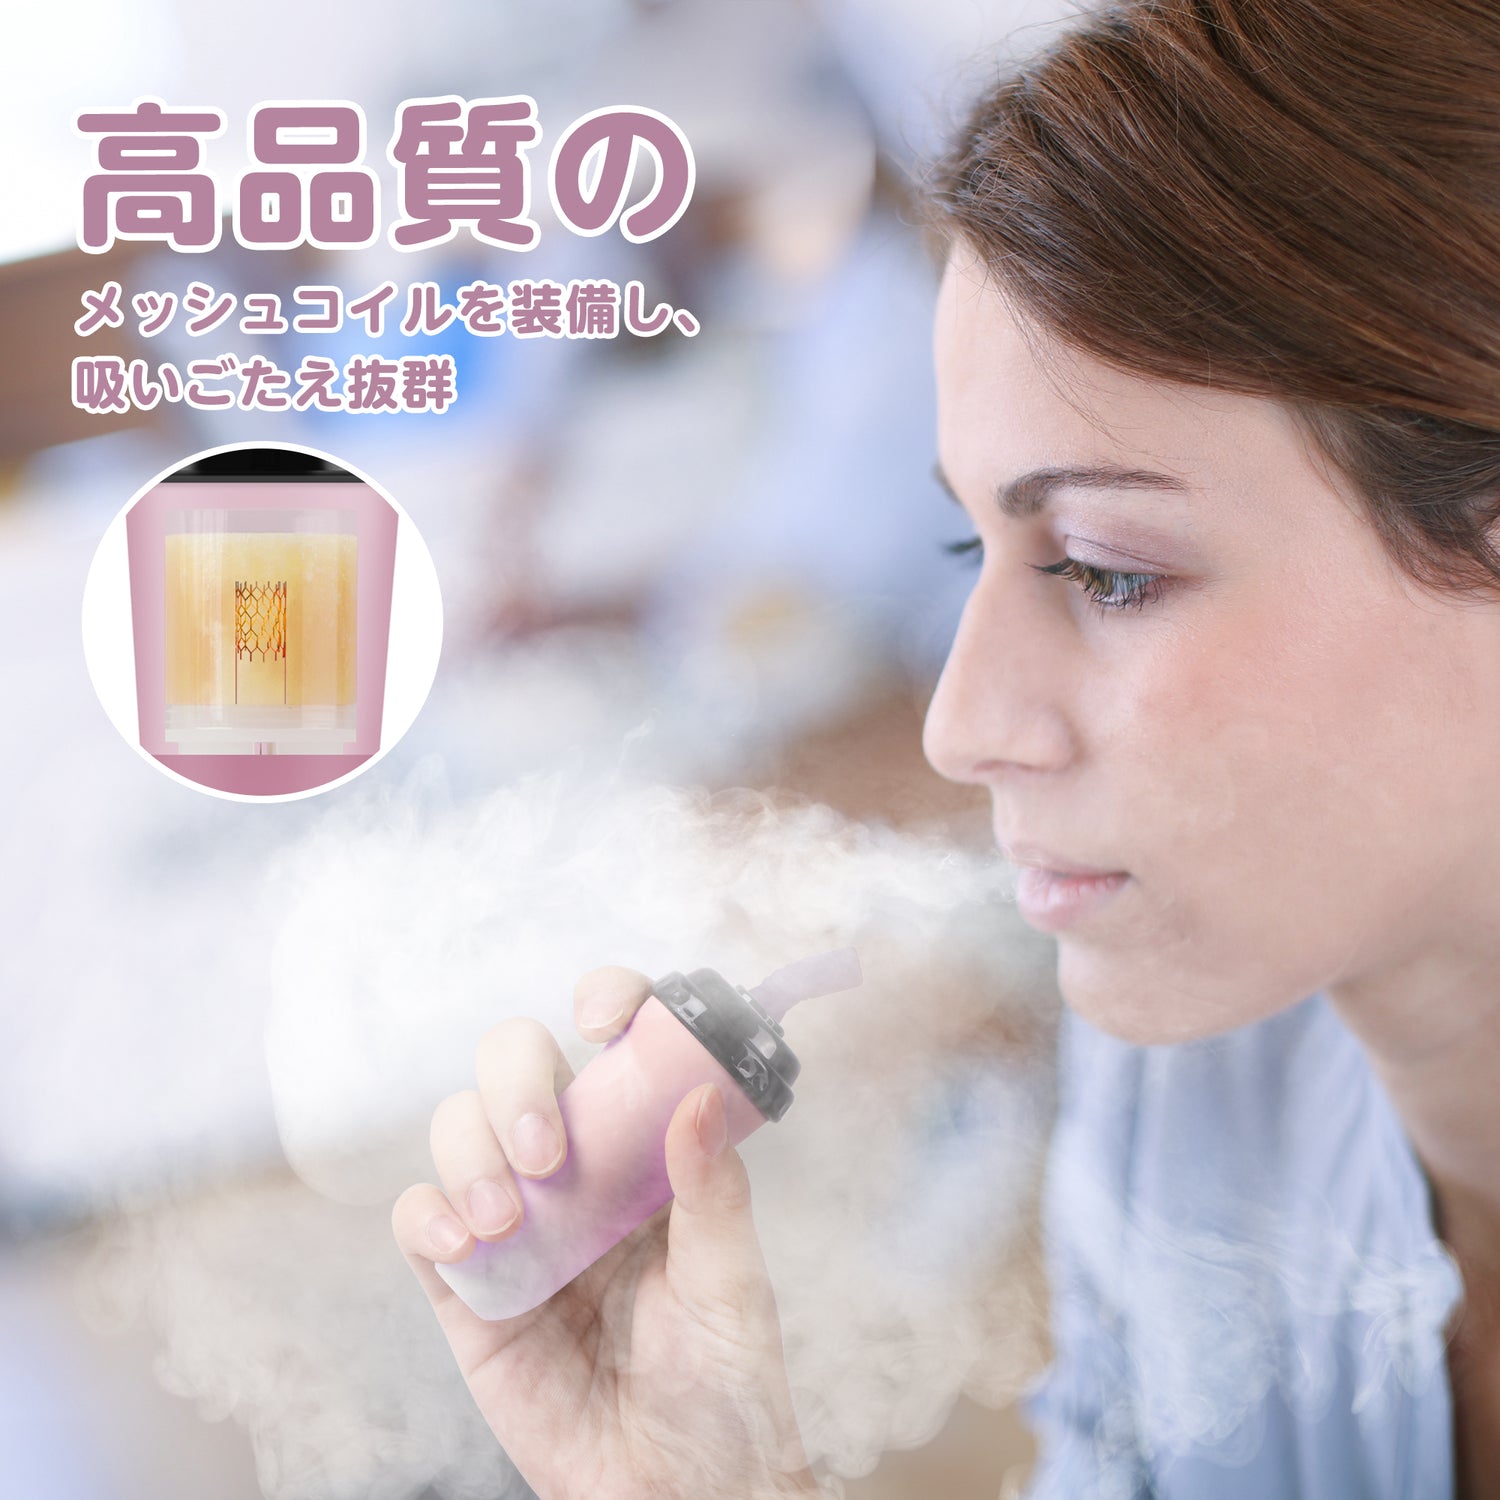 業界初・minicup 電子タバコ 使い捨て 1本約5000回吸引可能 ニコチン・タールZERO 禁煙補助 MIX-1